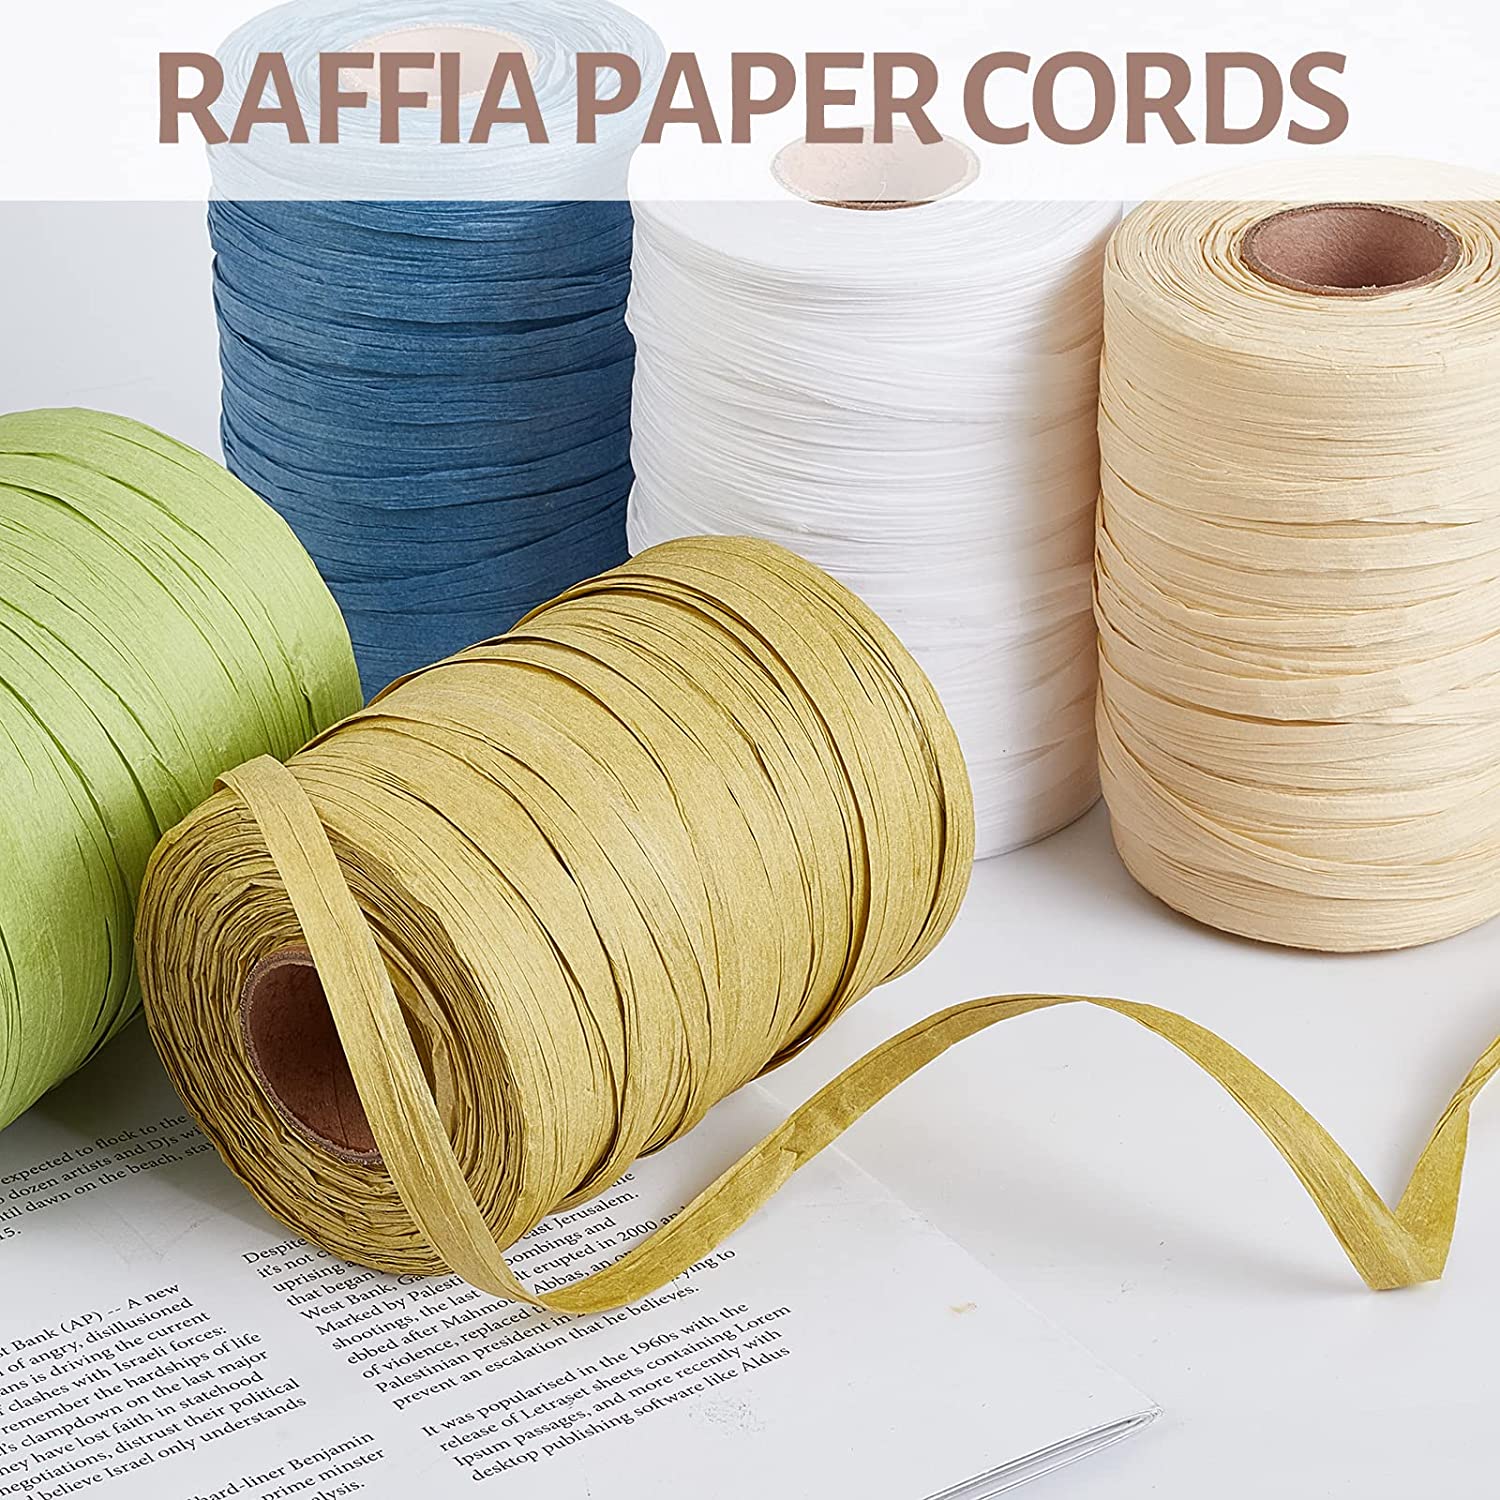 Raffia Twisted Paper Cord, Raffia Accessories